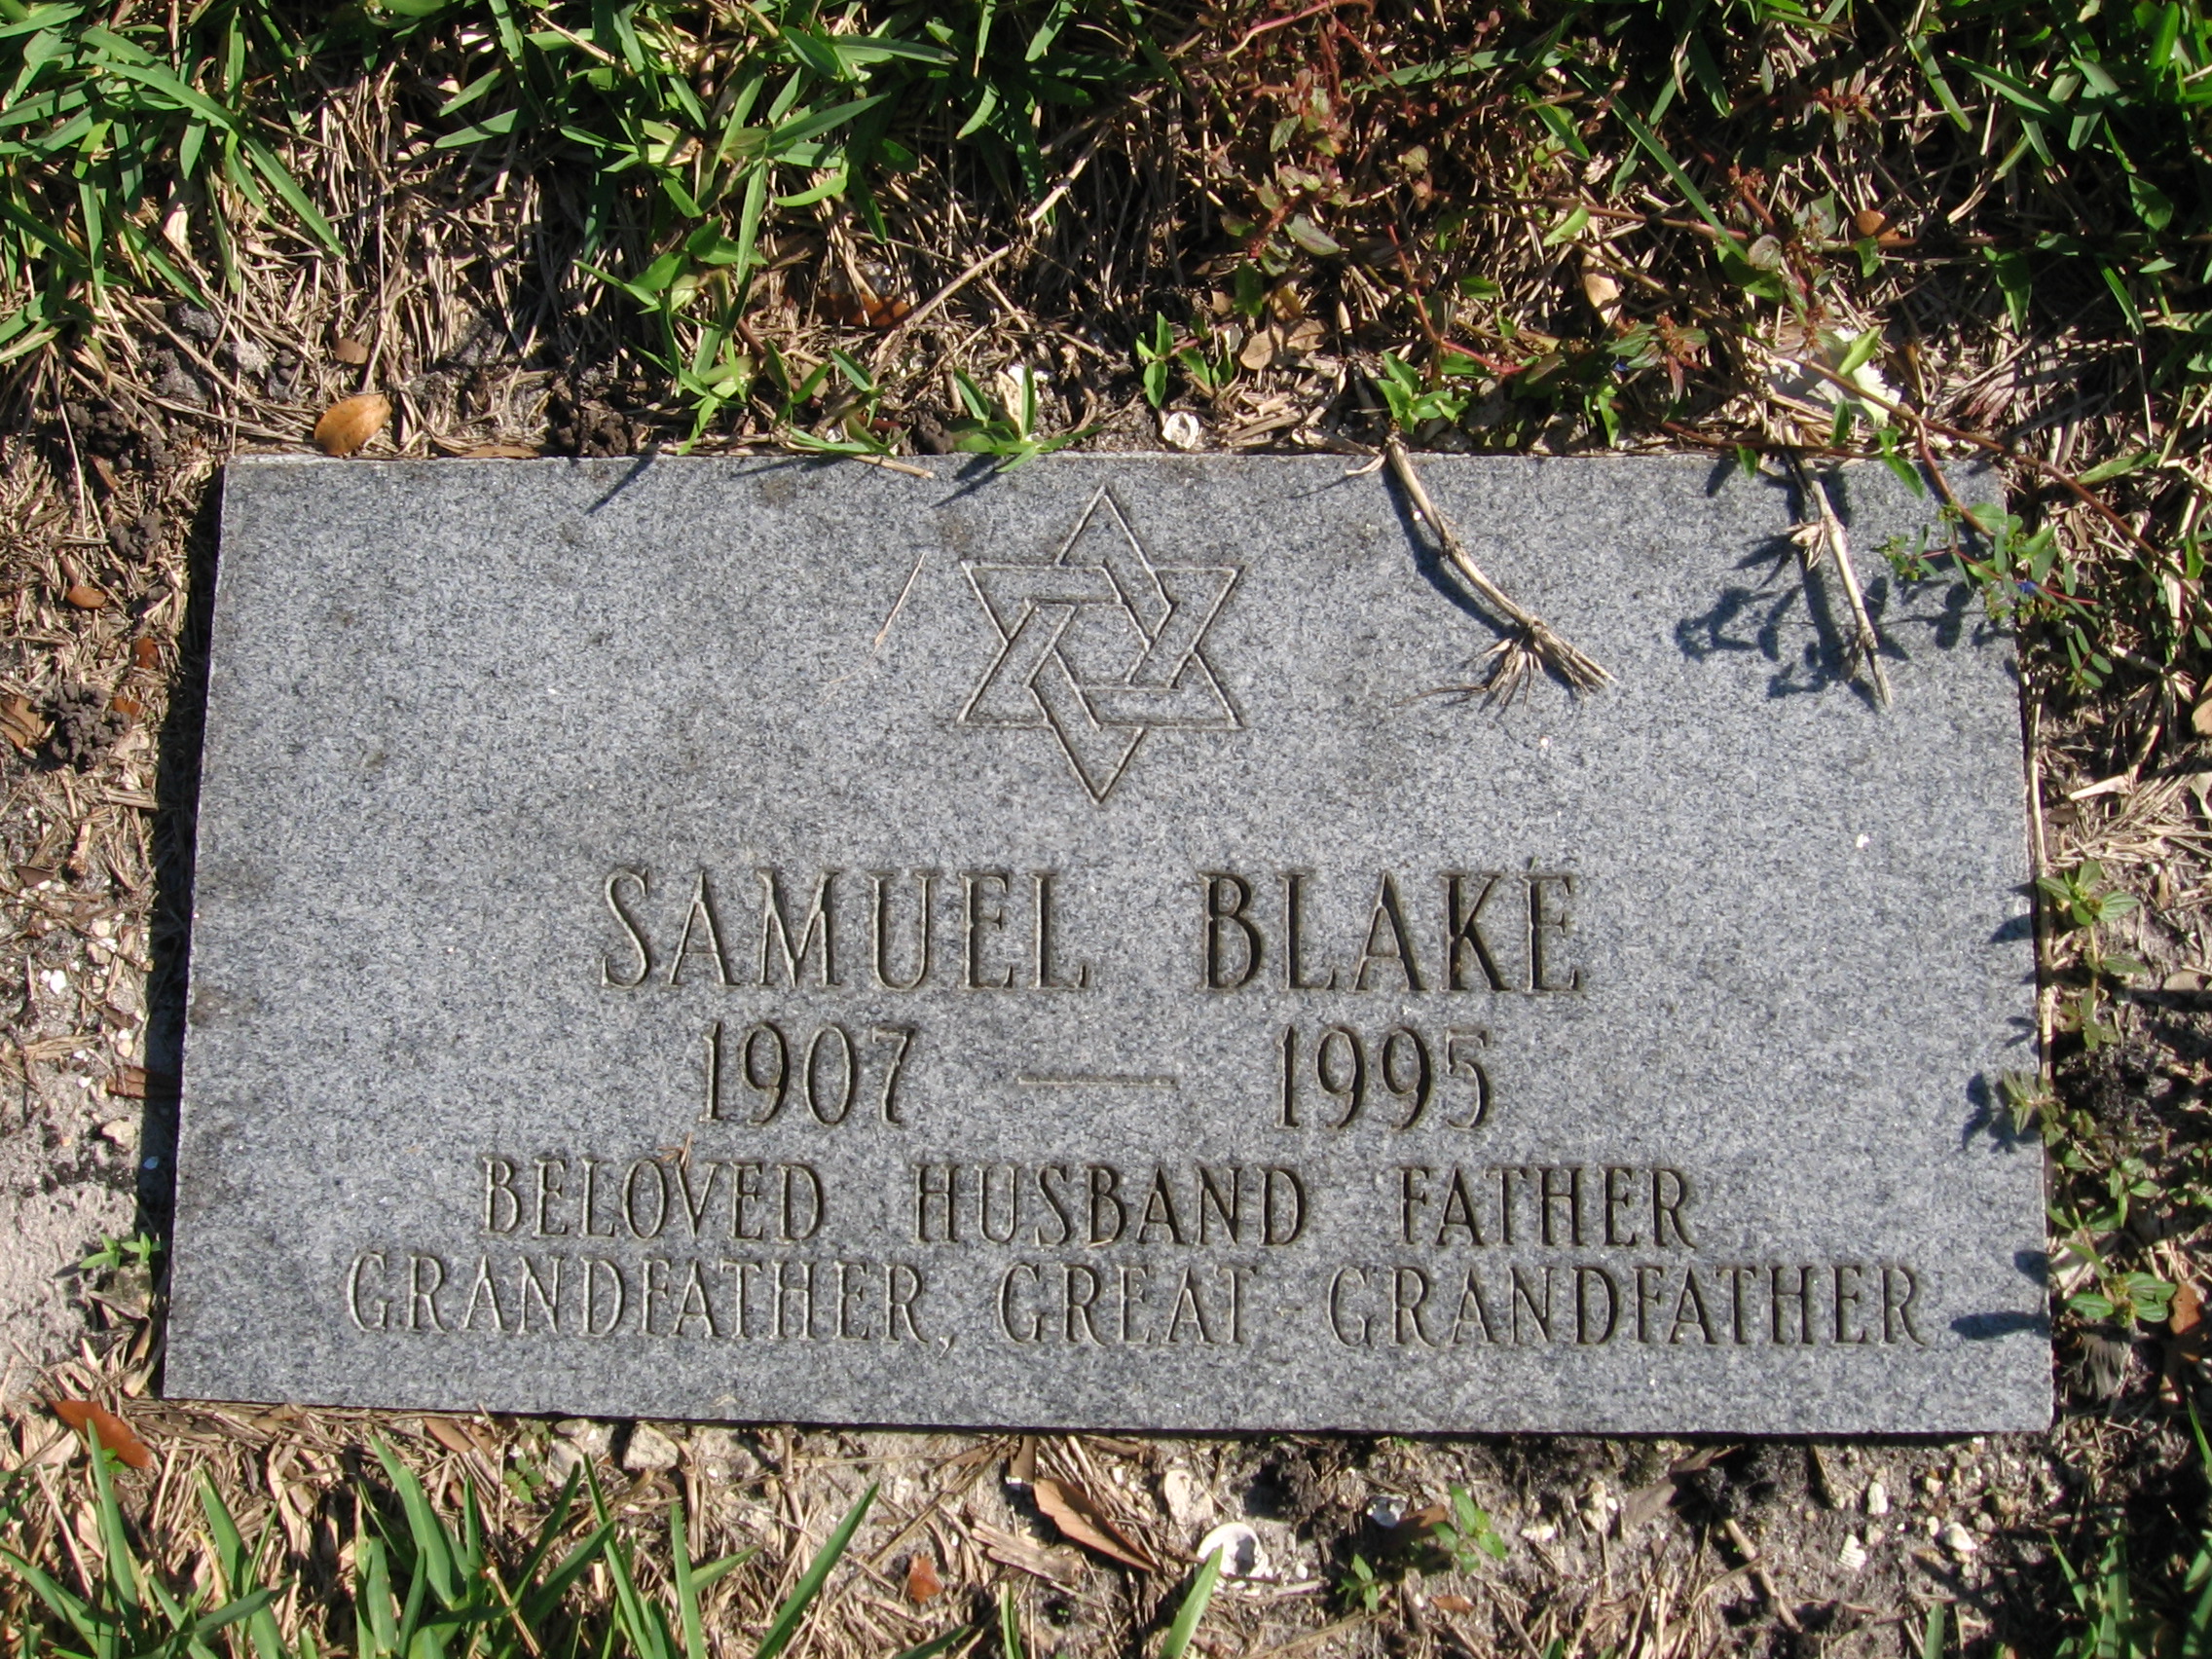 Samuel Blake